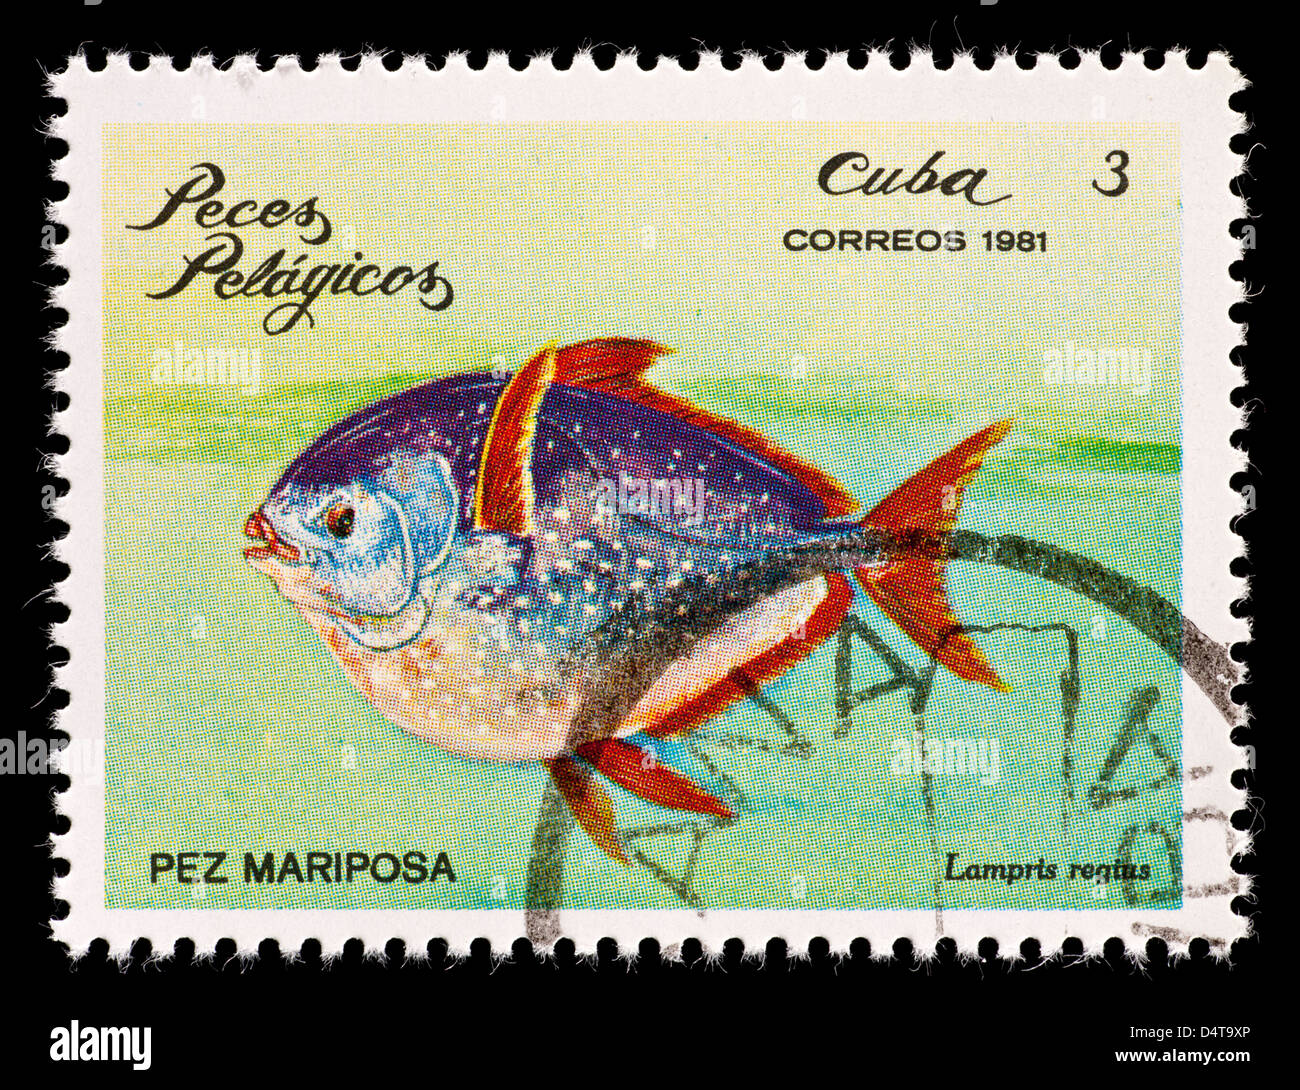 Timbre-poste de Cuba représentant des dieux moonfish (Lampris regius) Banque D'Images